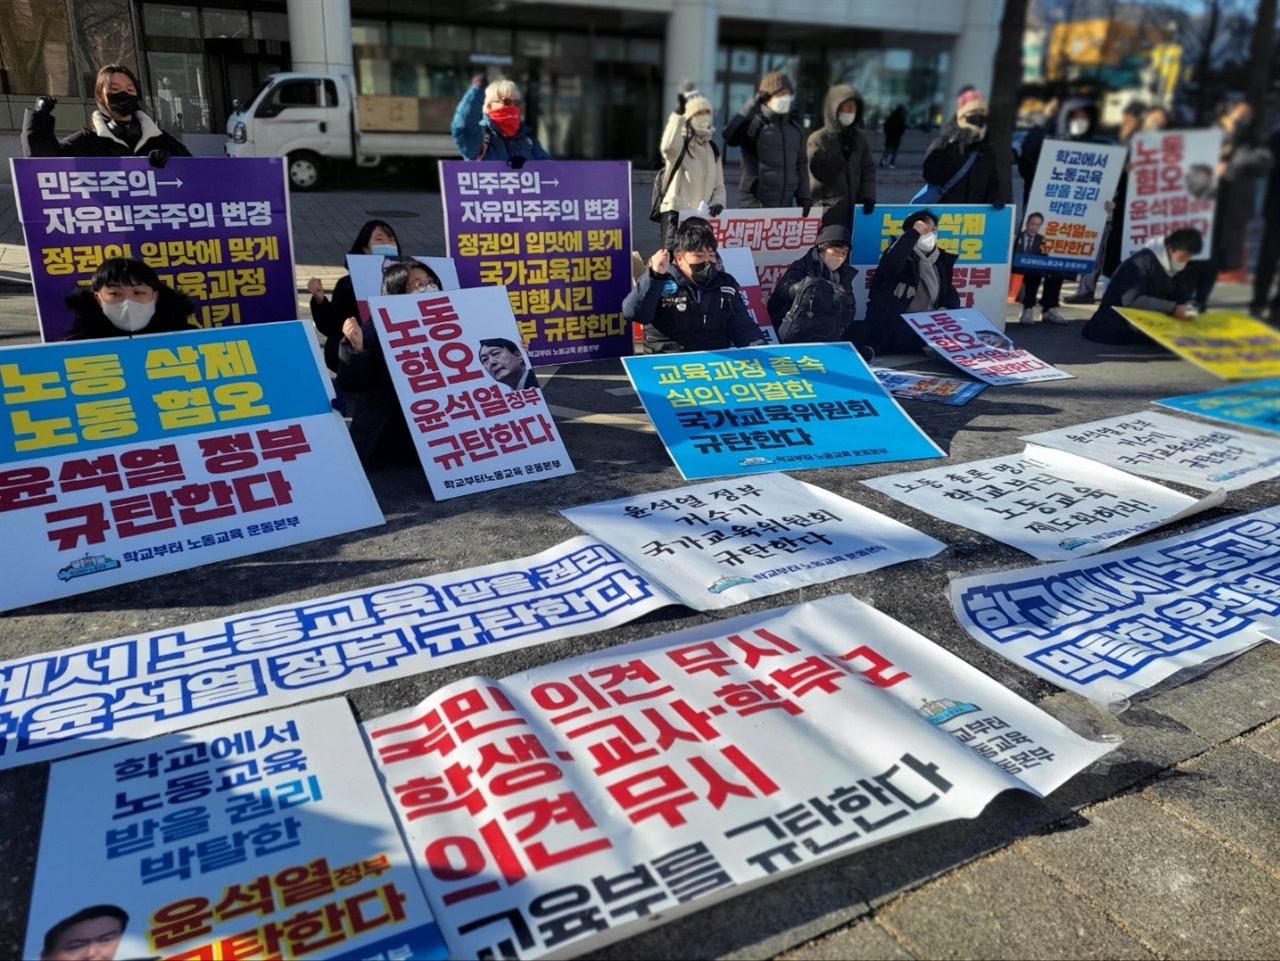 "윤석열 정부는 교육과정 개악 즉각 중단하라" 구호 외치는 학교부터 노동교육 운동본부 회원들